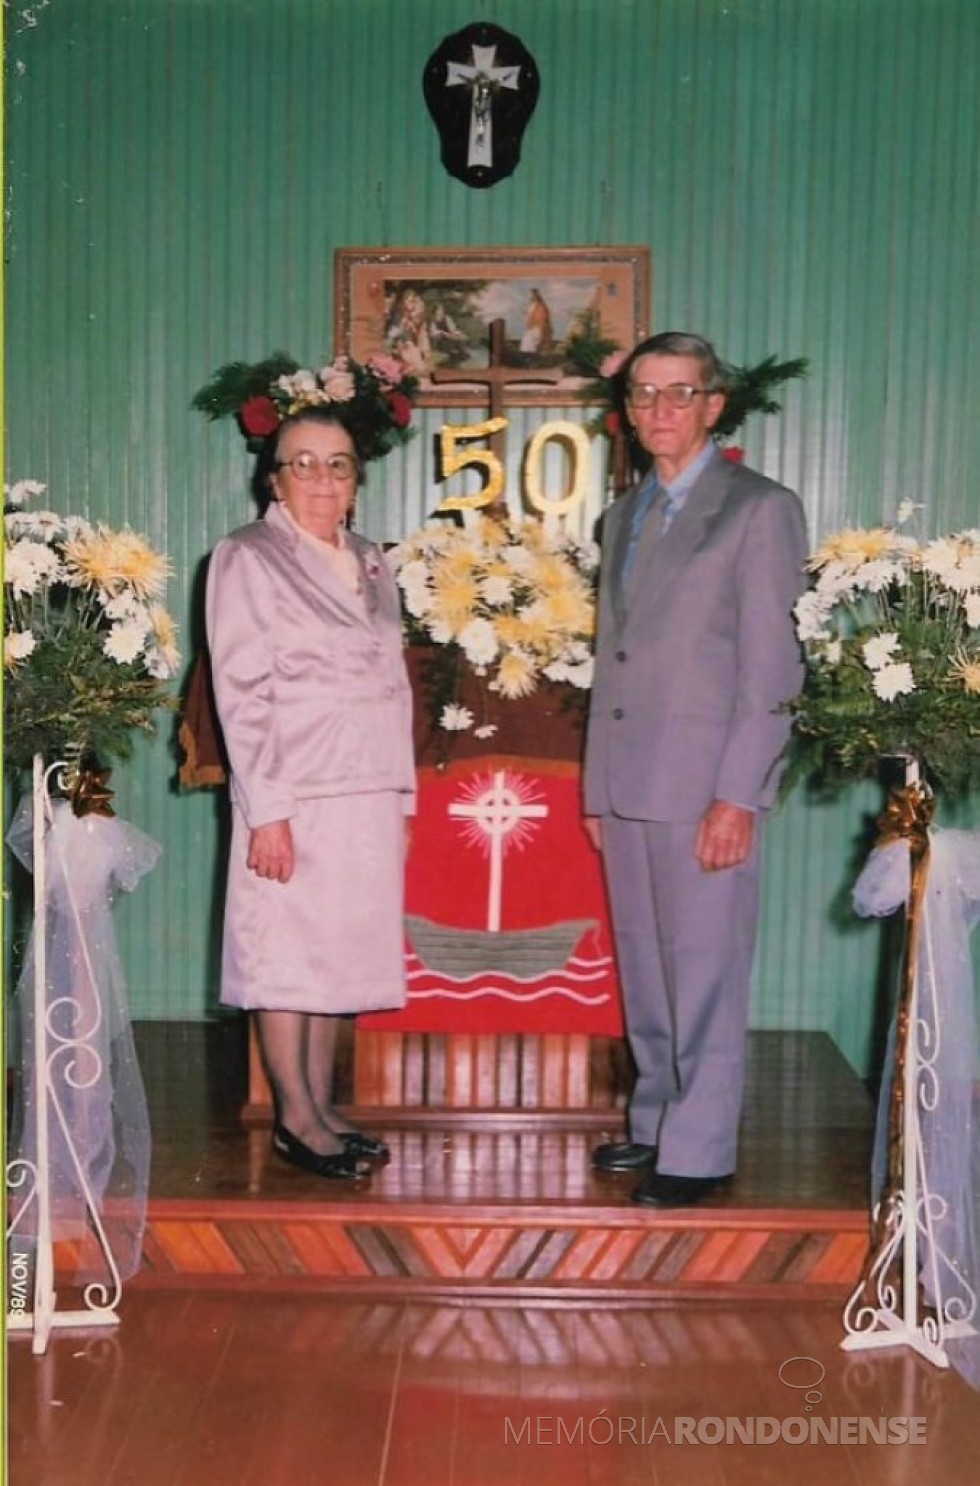 || Casal pioneiro Catarina e Herne Heidrich na comemoração de suas Bodas Ouro, festejado em 11 de novembro de 1989.
Imagem: Acervo Jheison Griep. - FOTO 3 - 